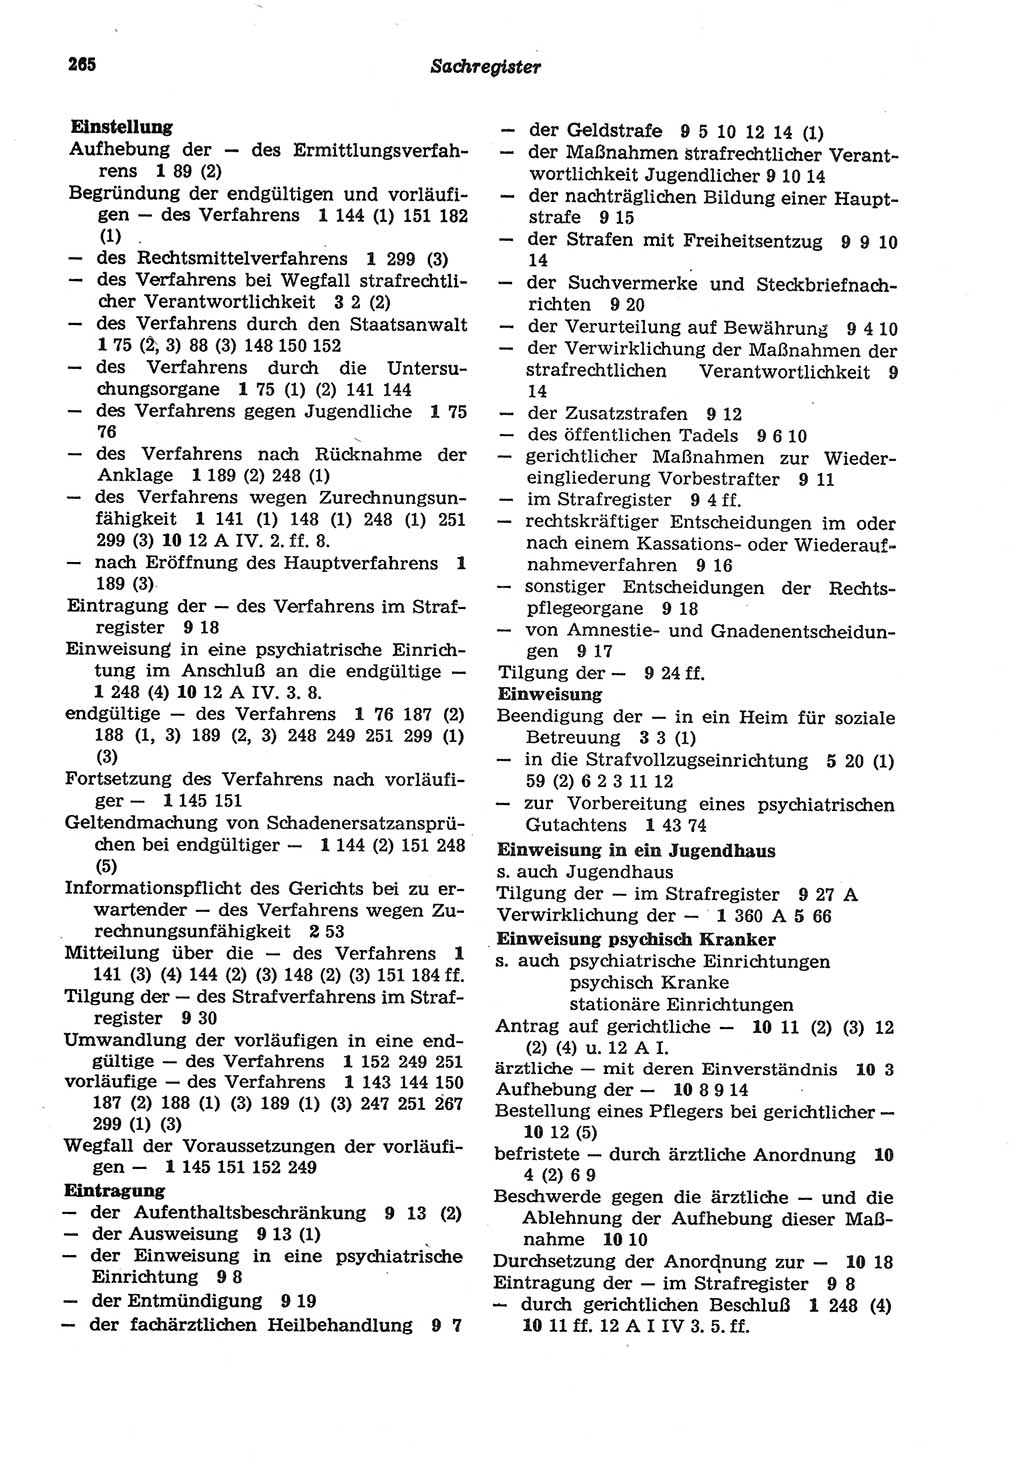 Strafprozeßordnung (StPO) der Deutschen Demokratischen Republik (DDR) sowie angrenzende Gesetze und Bestimmungen 1977, Seite 265 (StPO DDR Ges. Best. 1977, S. 265)